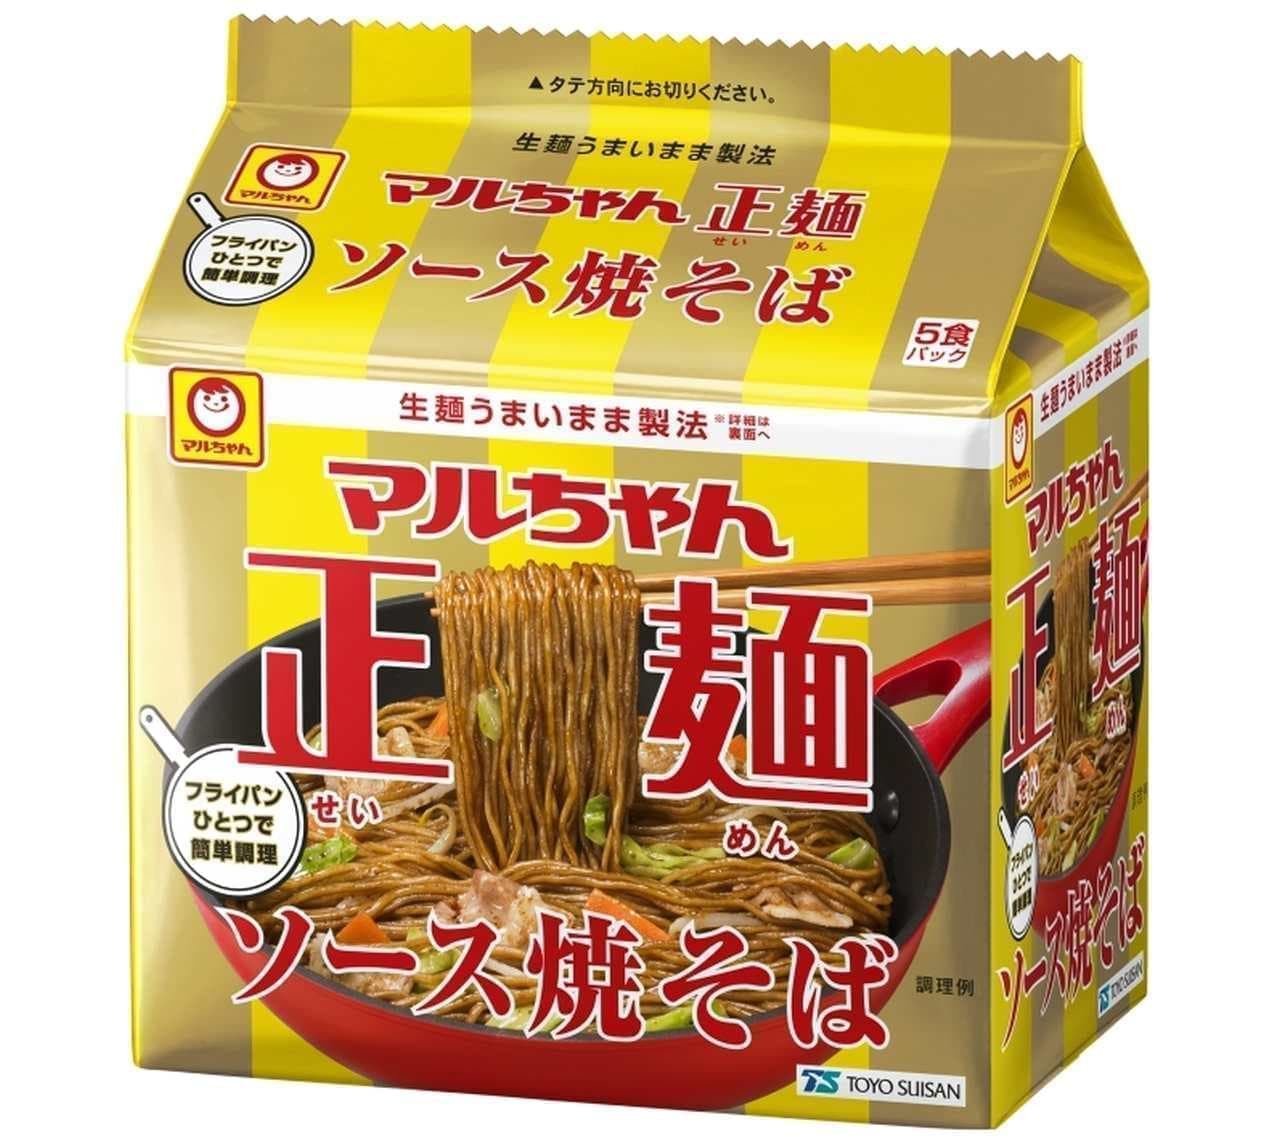 マルちゃん正麺から“ソース焼そば”登場